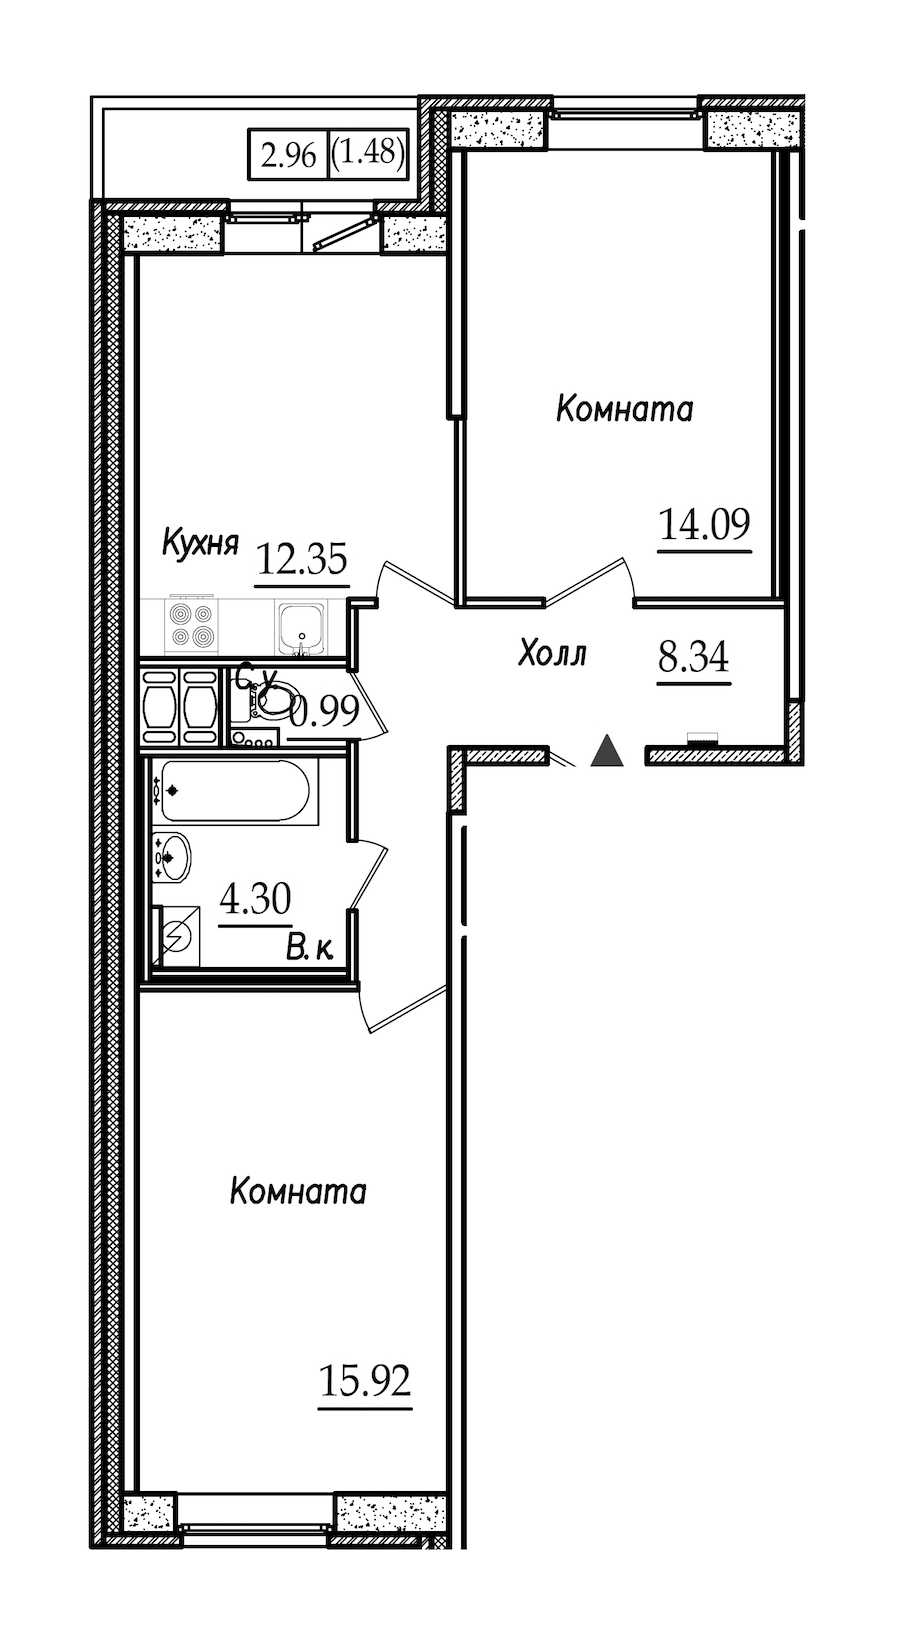 Двухкомнатная квартира в СПб Реновация: площадь 57.47 м2 , этаж: 4 – купить в Санкт-Петербурге